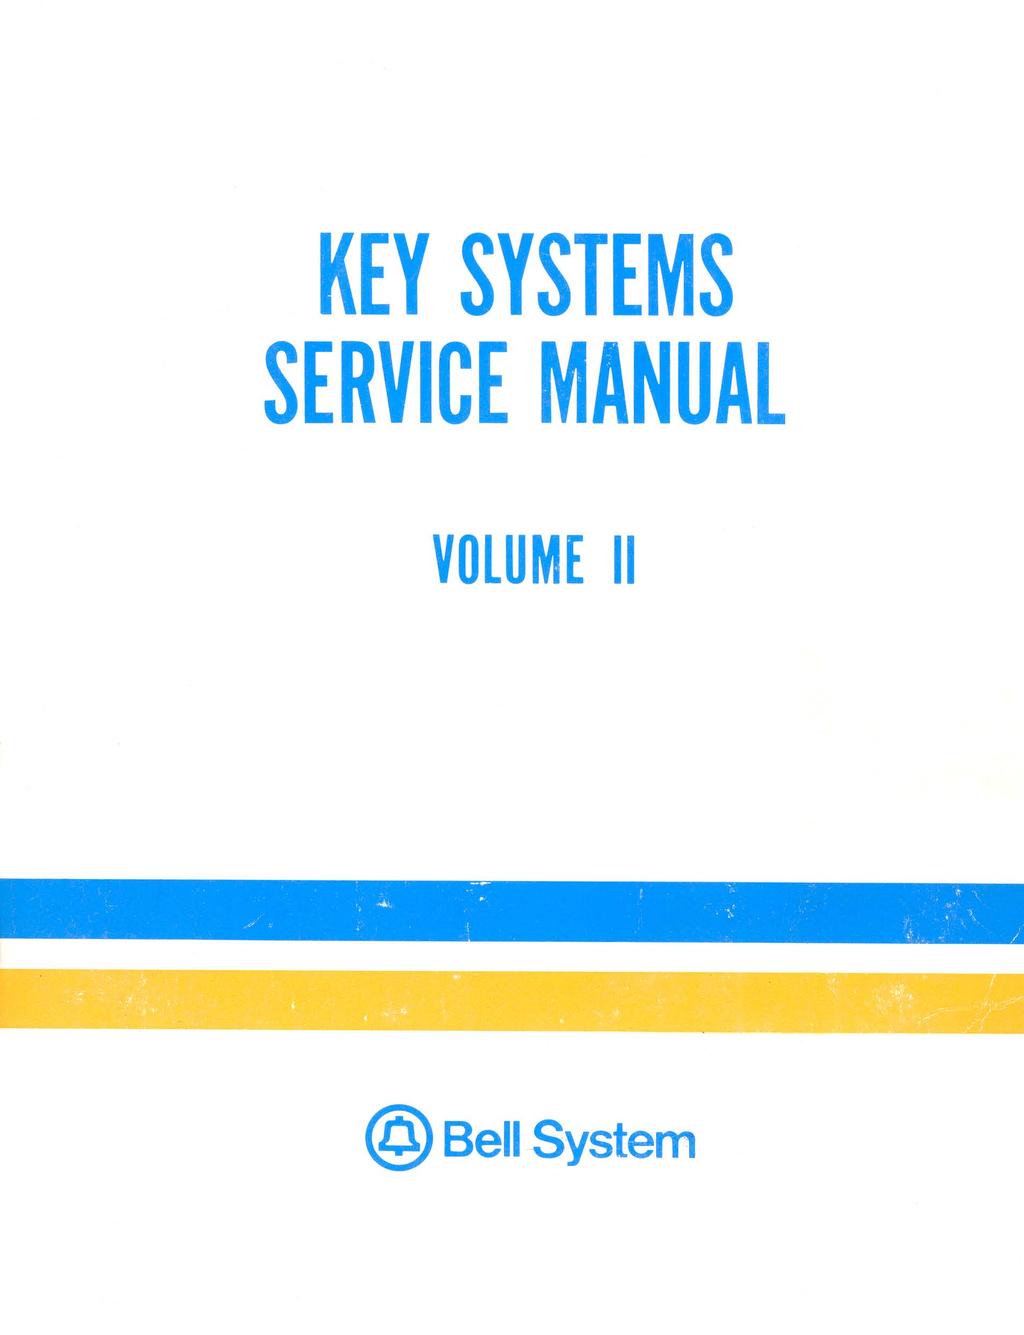 KEY SYSTEMS SERVICE MANUAL